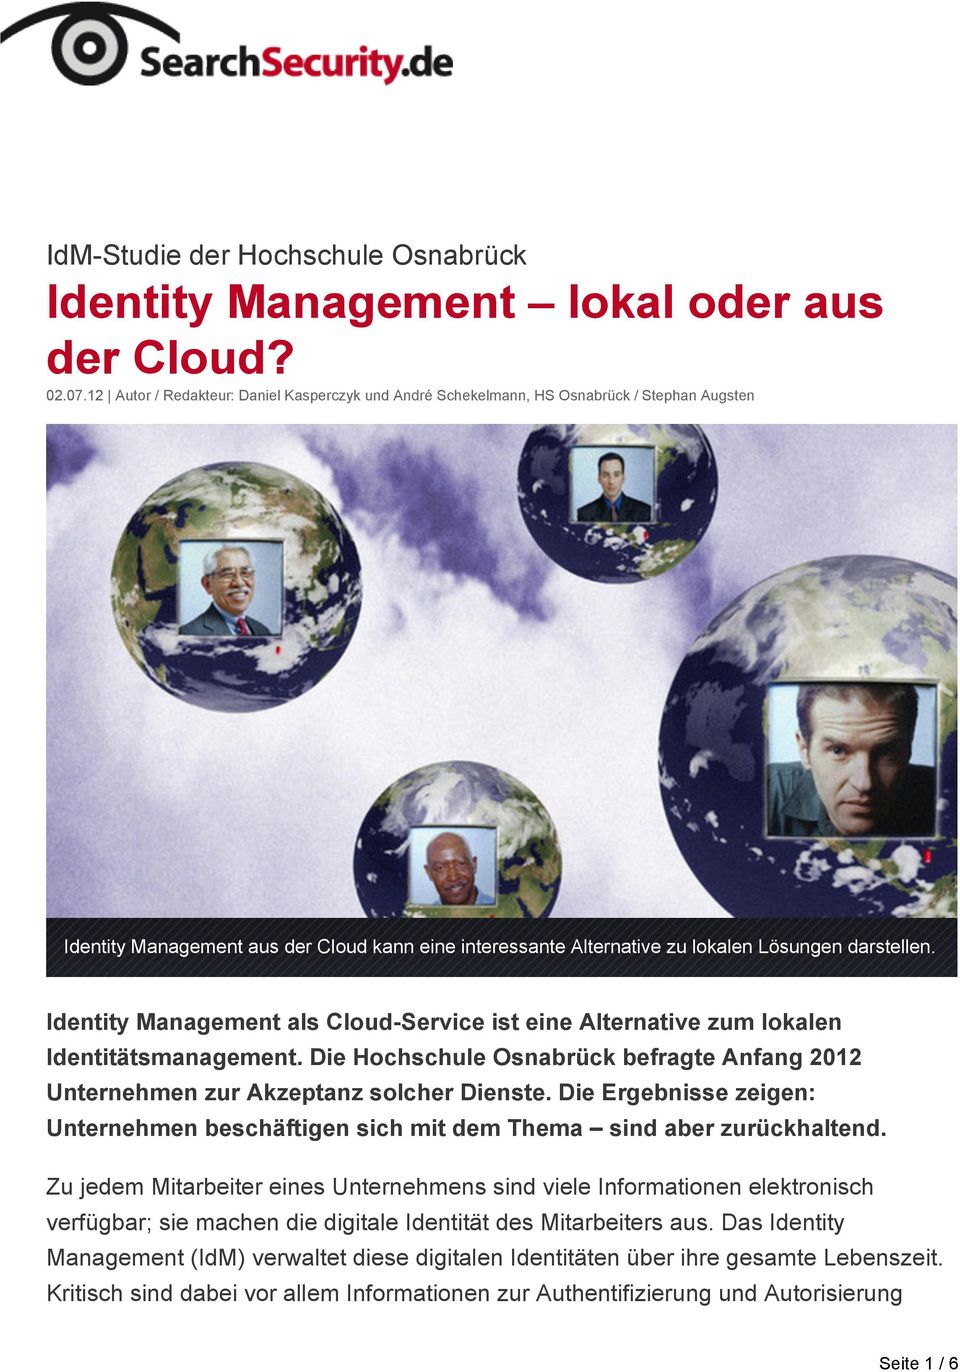 Identity Management als Cloud-Service ist eine Alternative zum lokalen Identitätsmanagement. Die Hochschule Osnabrück befragte Anfang 2012 Unternehmen zur Akzeptanz solcher Dienste.